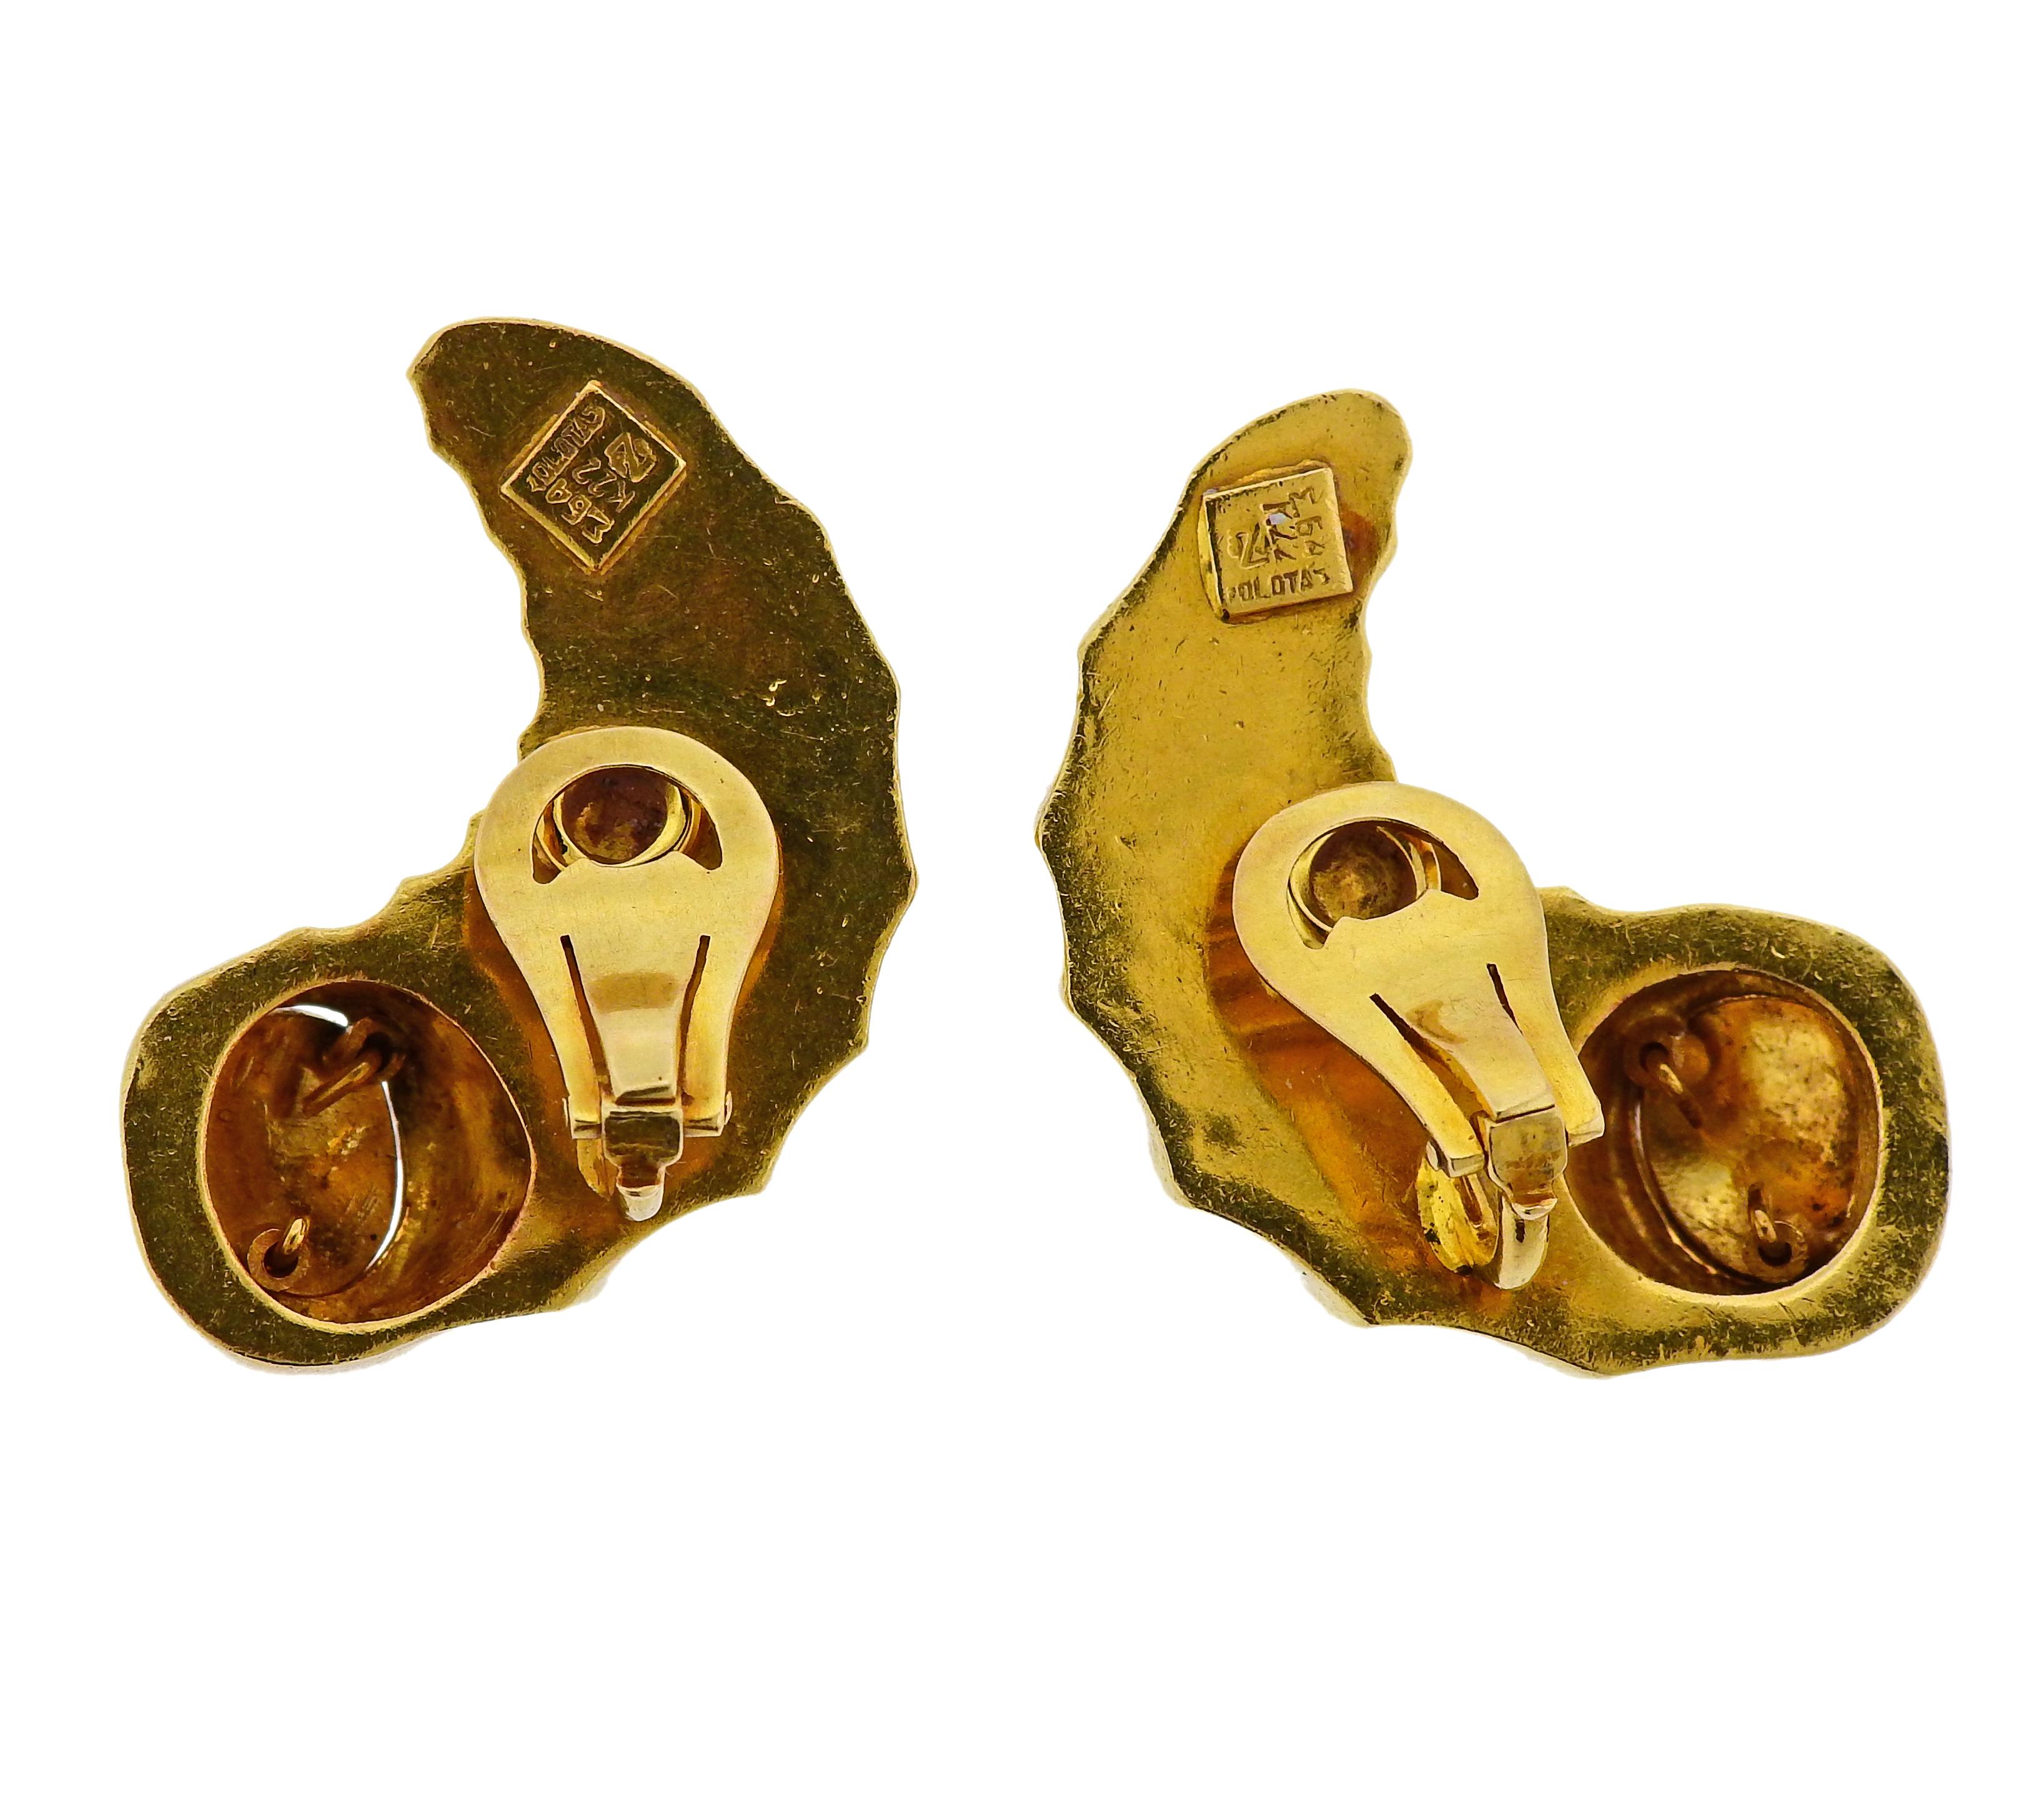 Pair of 22k yellow gold earrings, designed by Greek jewelry maker Zolotas.  Earrings measure 36mm x 26mm. Weight is 42.2 grams. Marked: k22, Zolotas, E64.